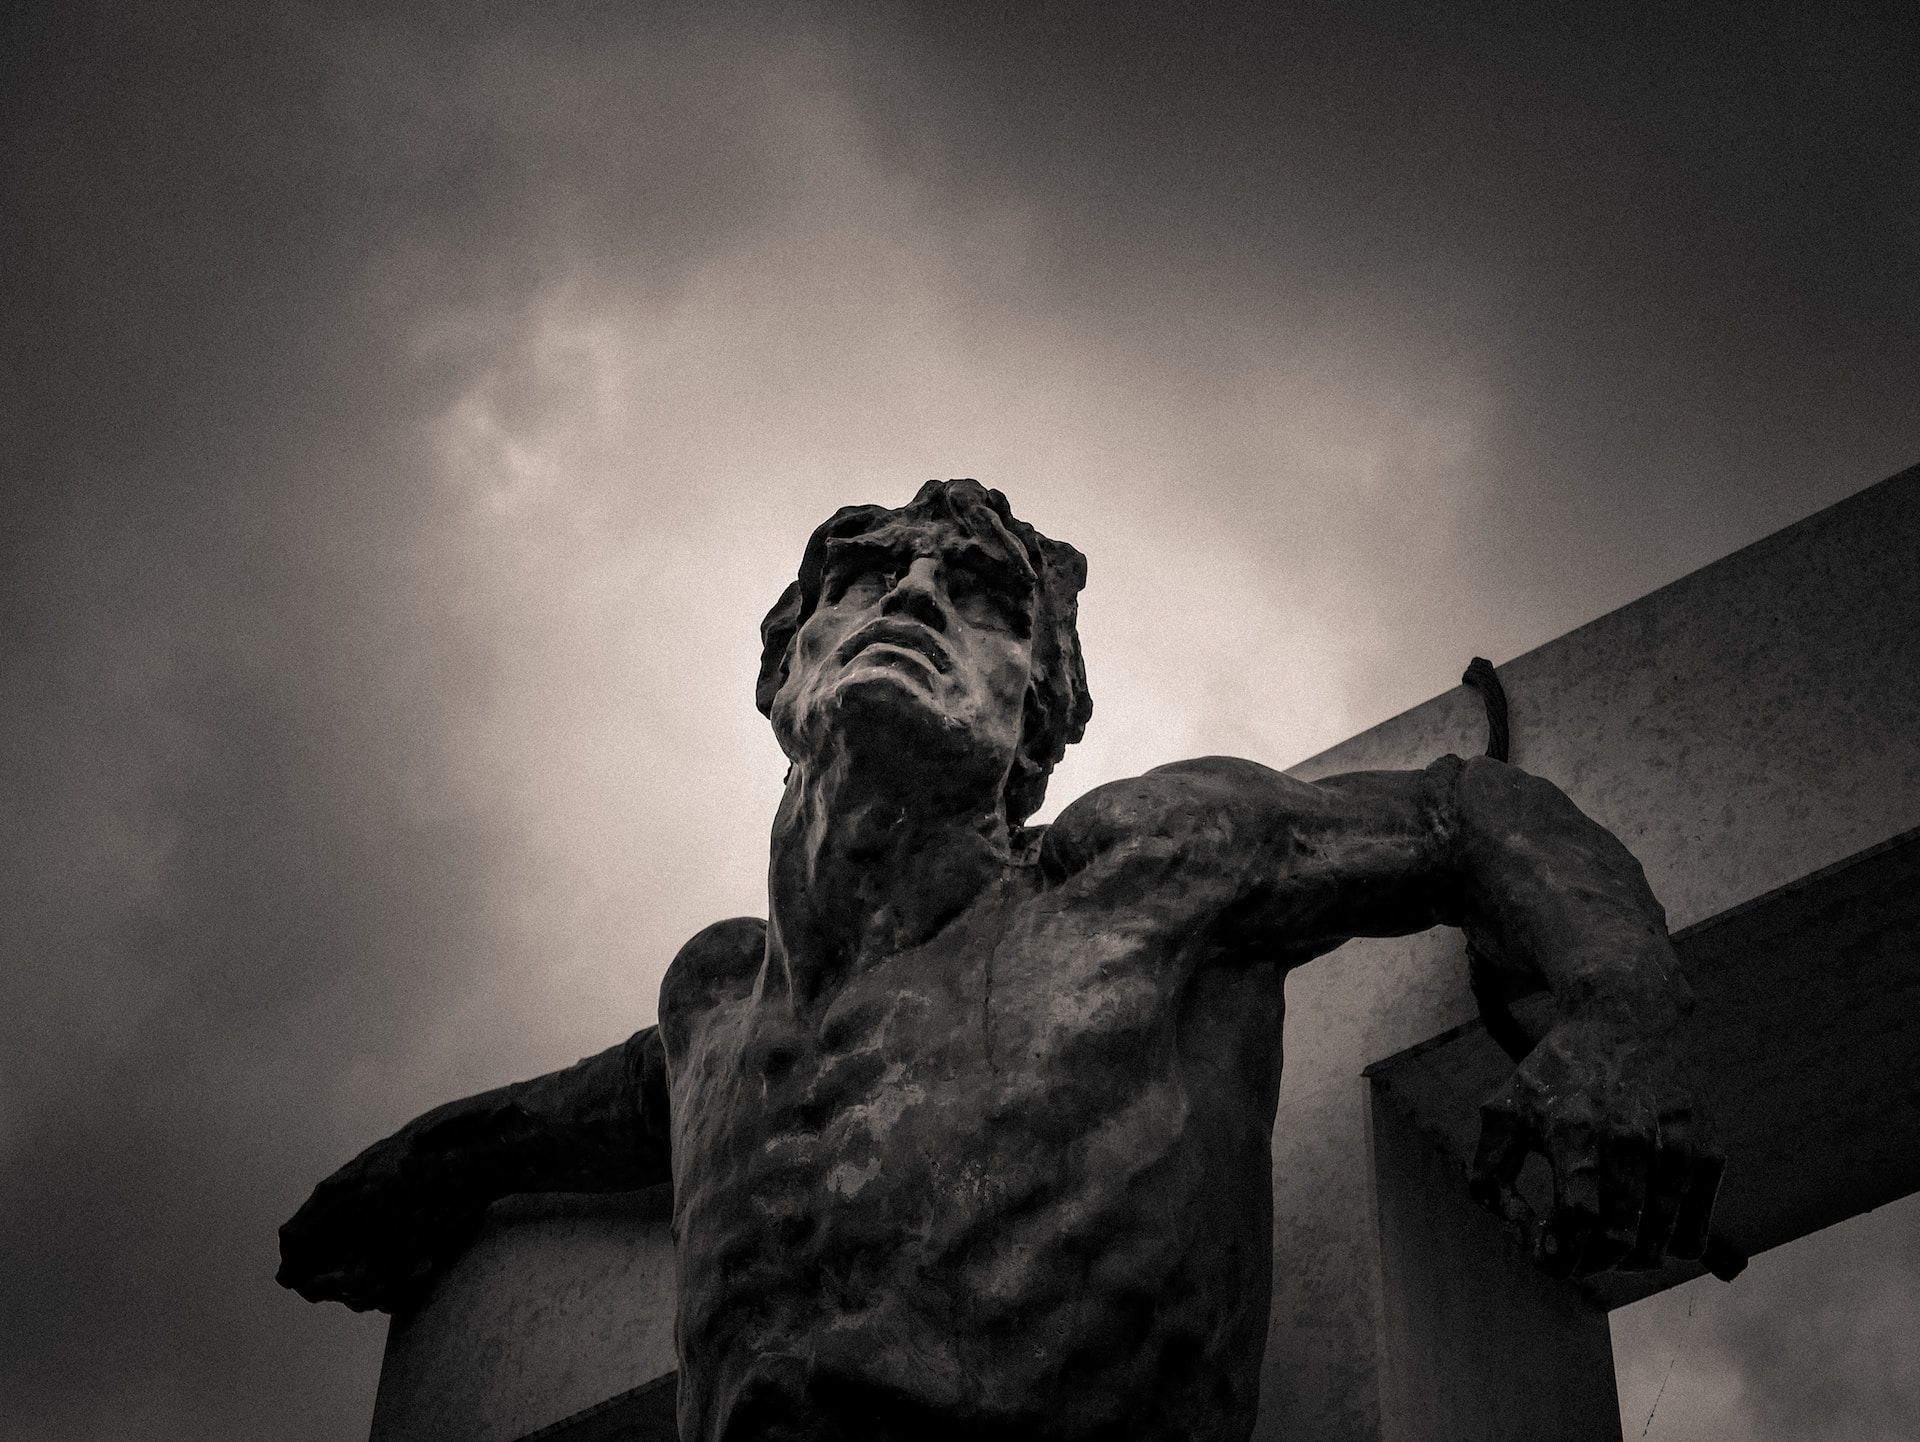 Visage dâ€™une statue reprÃ©sentant la Christ souffrant en croix - Photo de Frantisek Duris sur https://unsplash.com/fr/photos/sQ4aJOphZb4